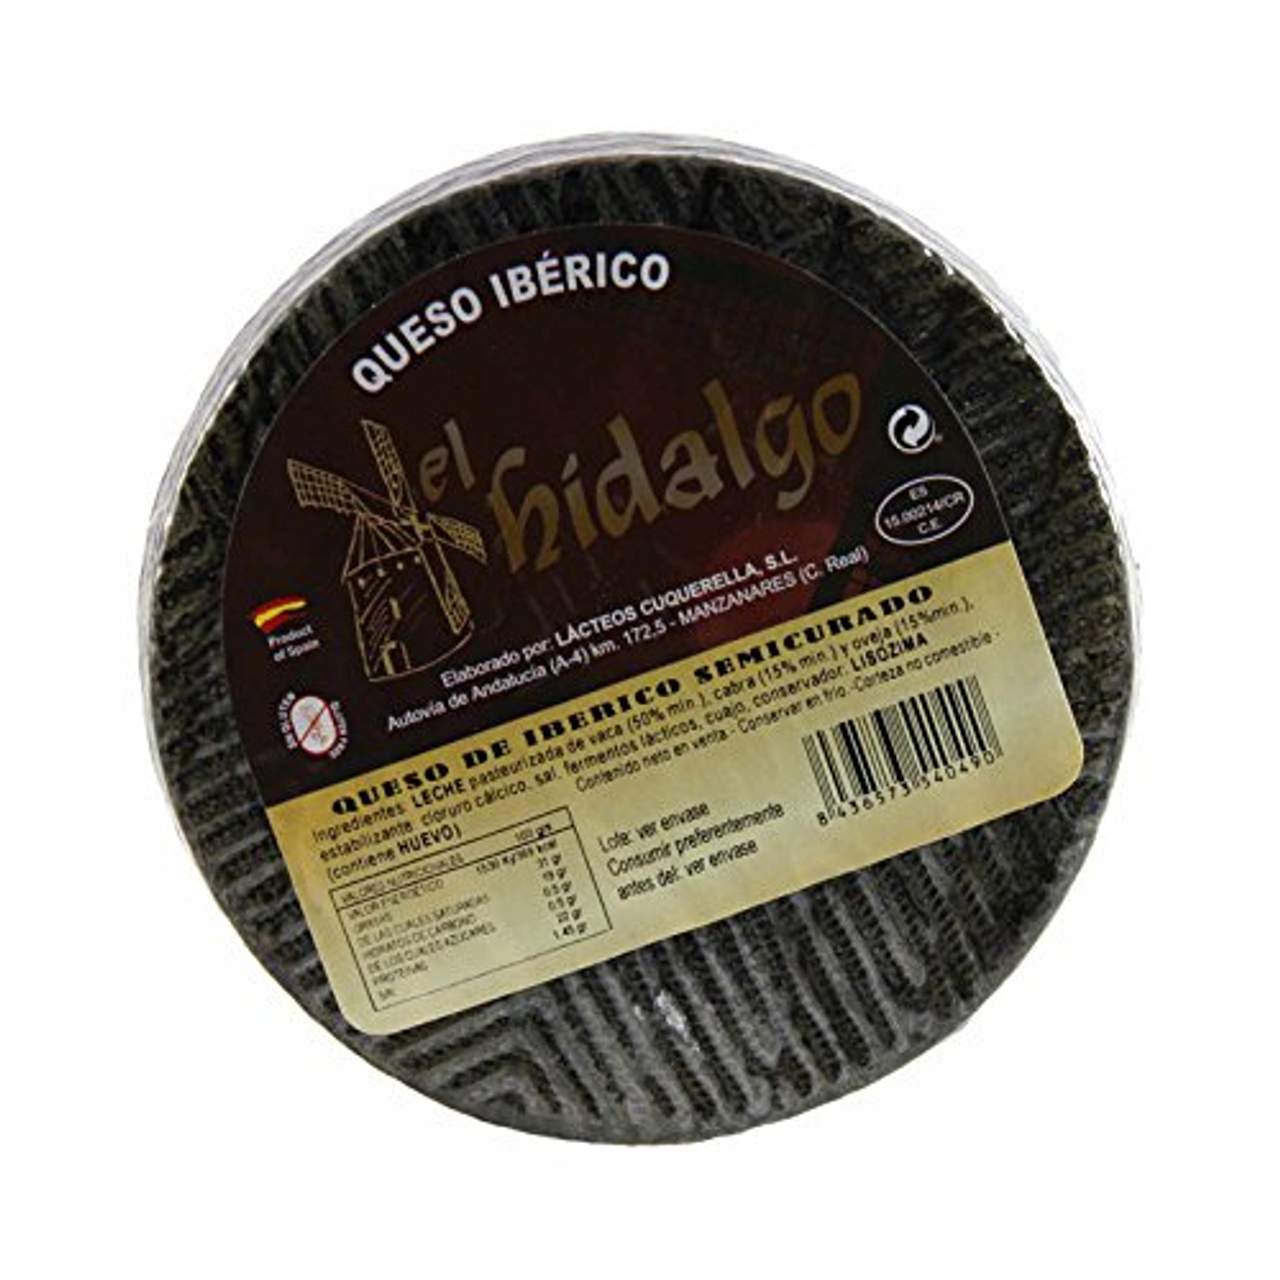 El Hidalgo Iberico